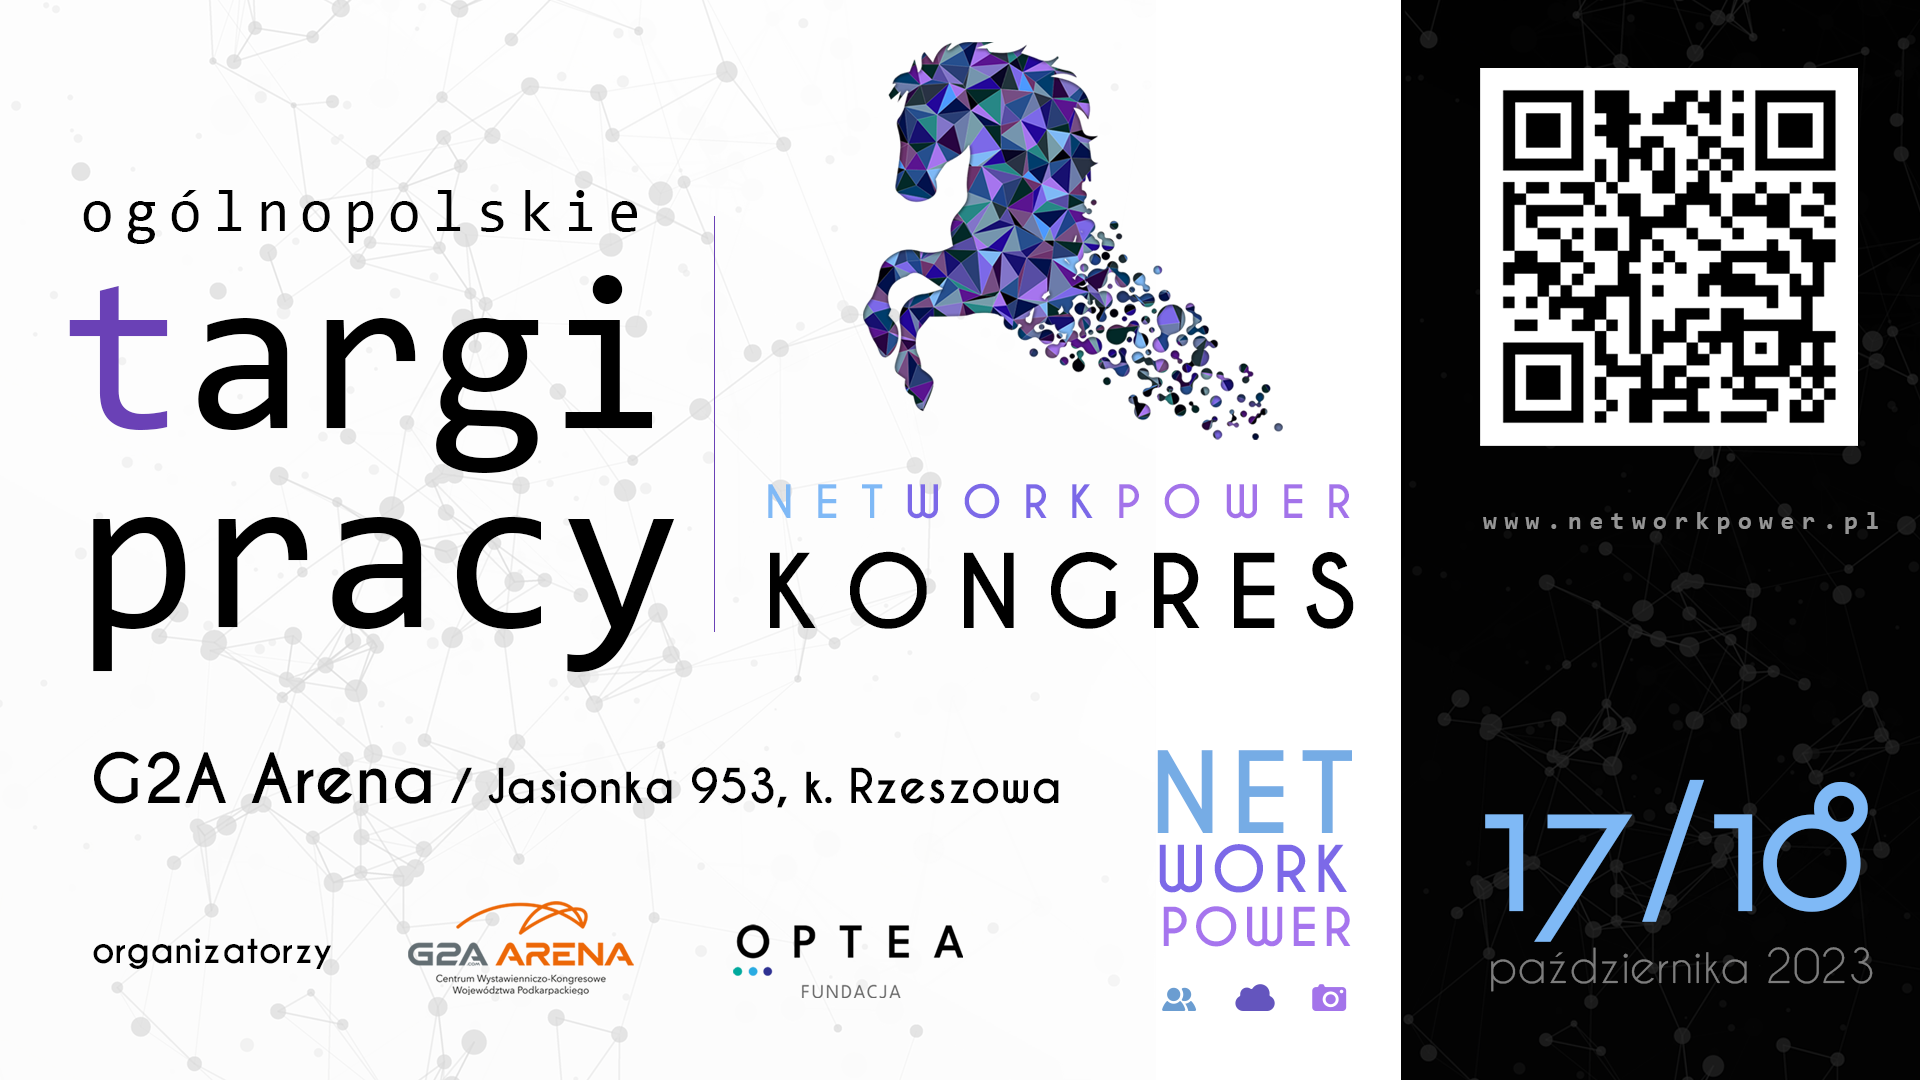 Kongres i Ogólnopolskie Targi Pracy NetWorkPower 17 i 18 października 2023 roku w G2A Arena w Jasionce koło Rzeszowa!